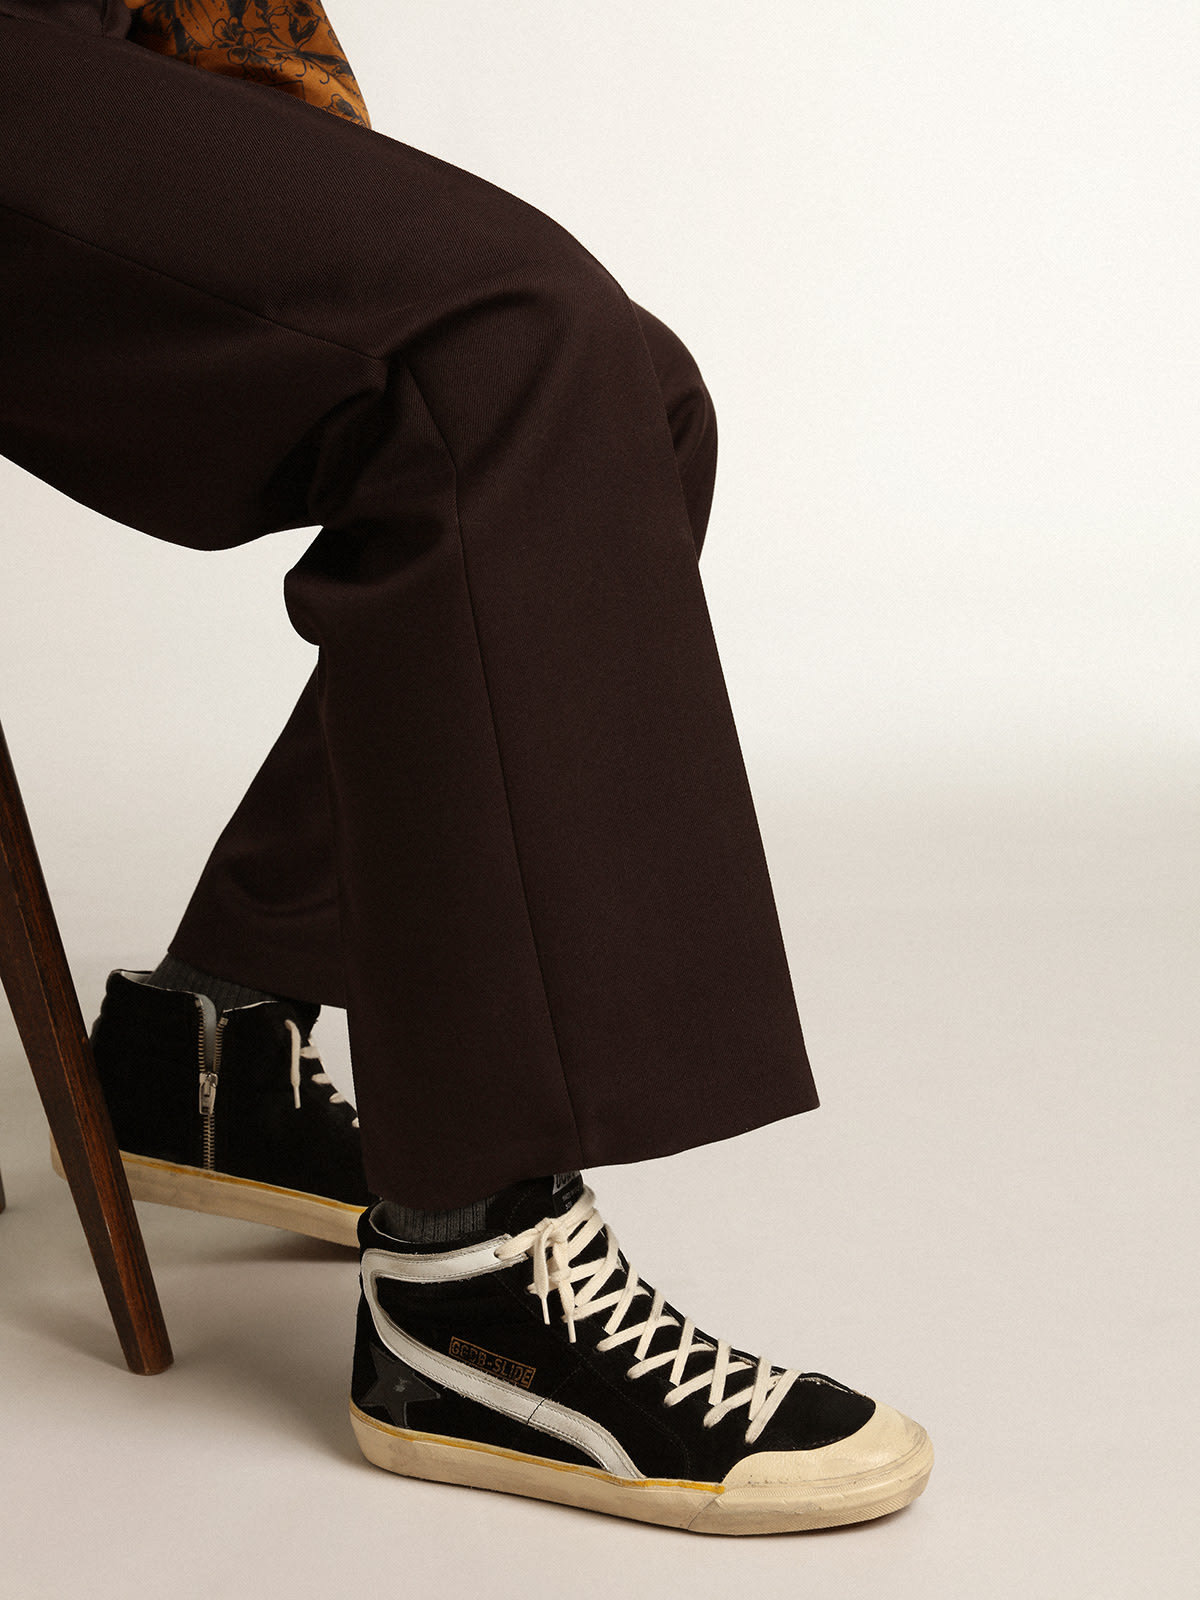 Golden Goose - Sneakers Slide Penstar en daim noir avec étoile en cuir noir et virgule en cuir blanc in 